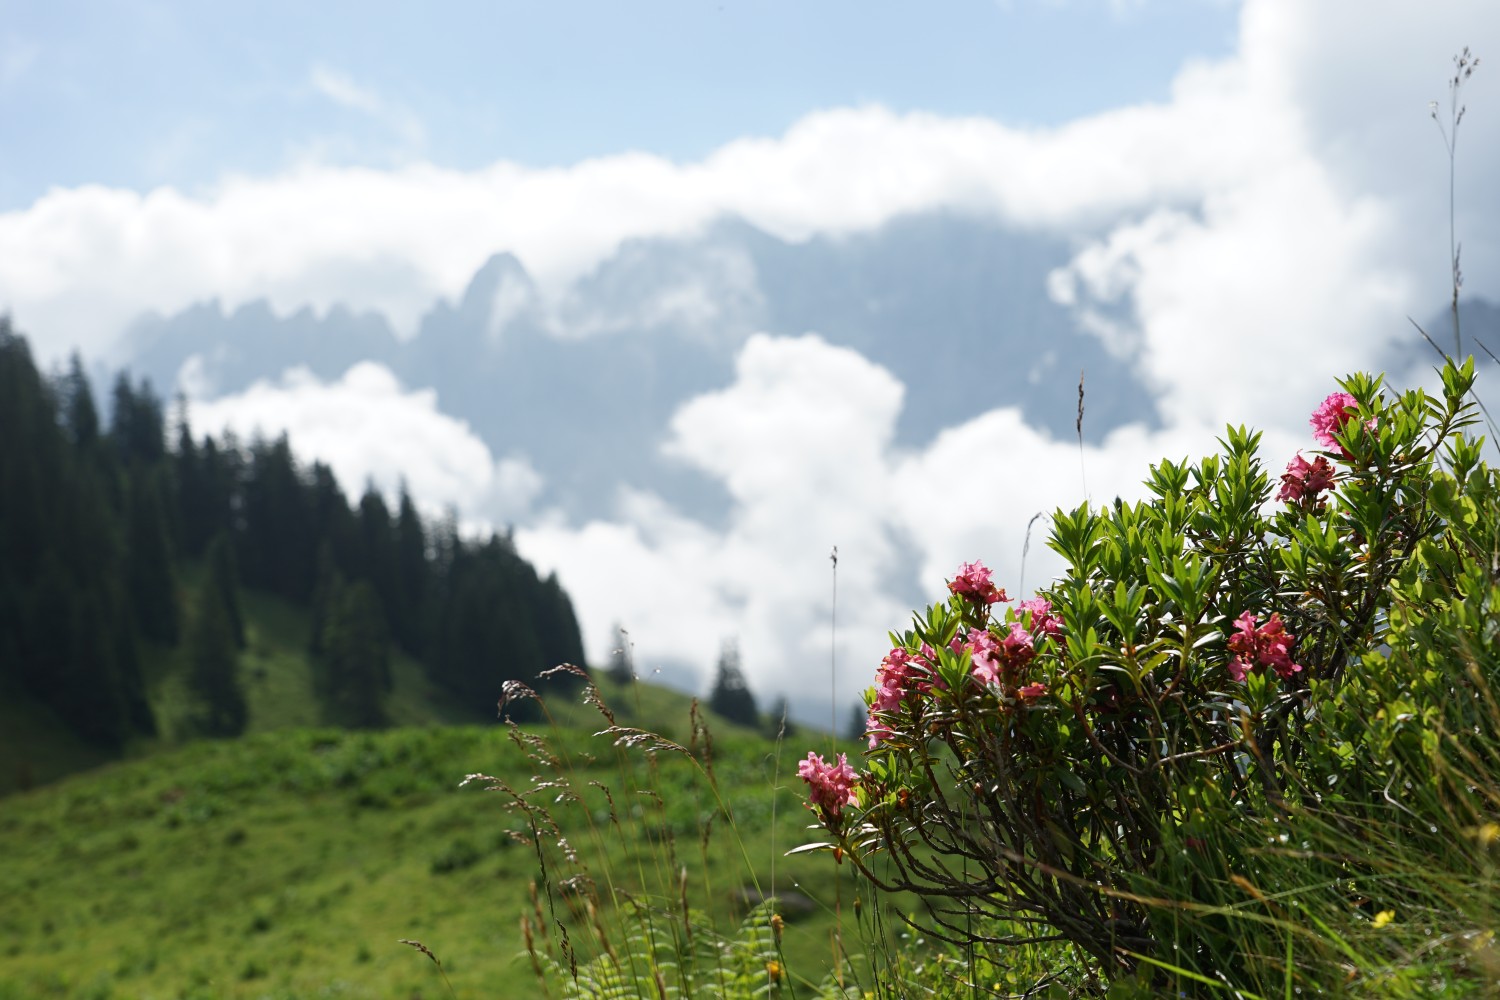 Alpenrosen am Wegrand, die Engelhörner als Panorama. Bild: Reto Wissmann